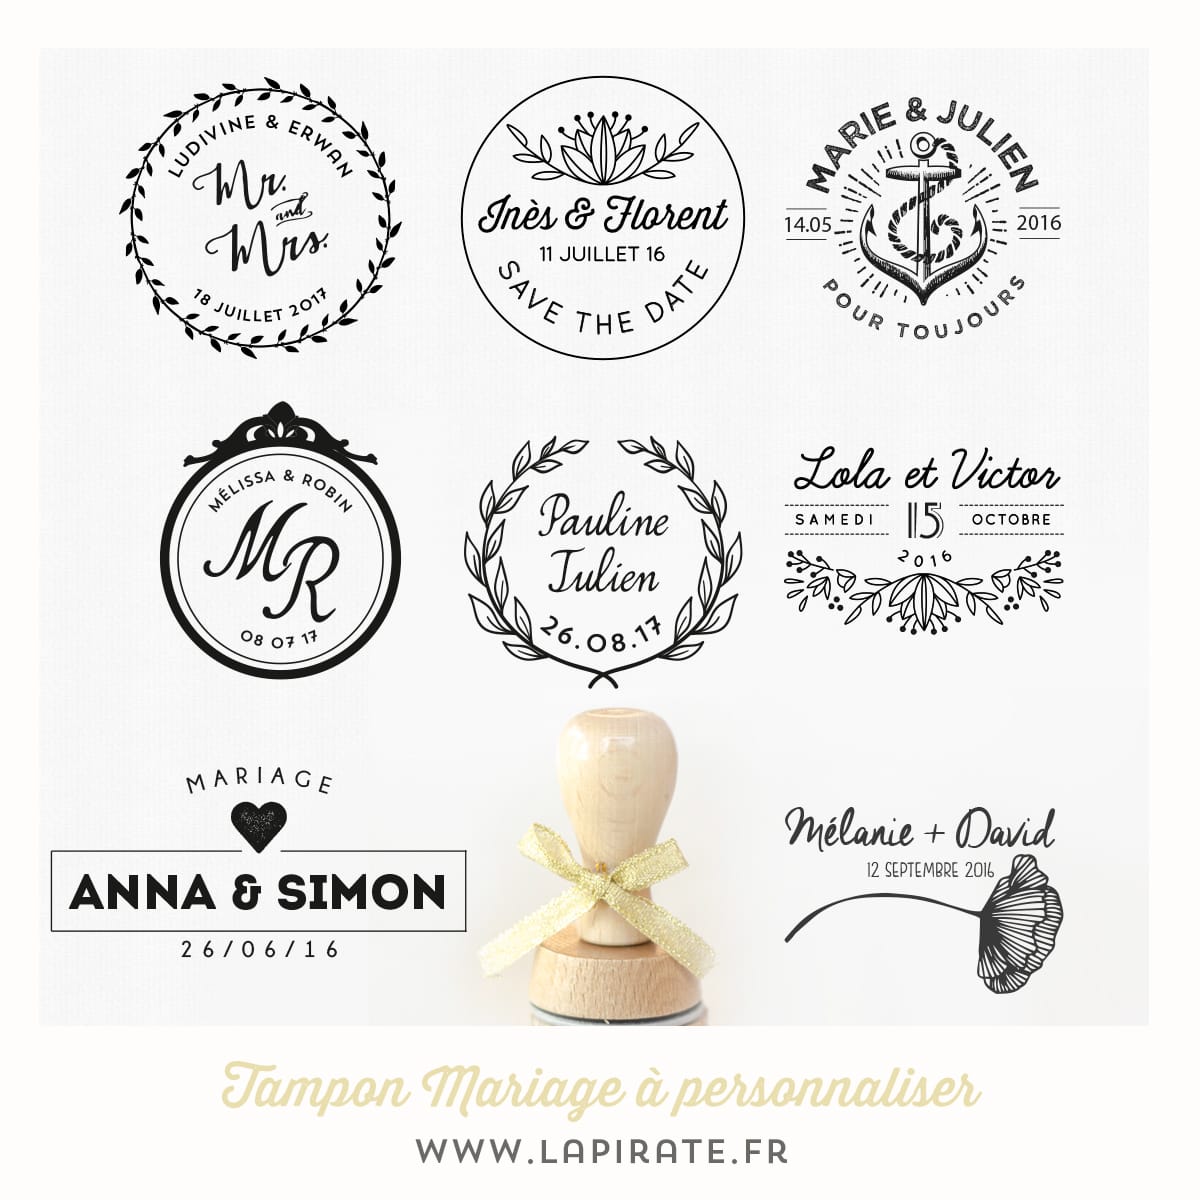 Personnalisez votre tampon mariage et apposez ce joli logo mariage sur tous les éléments de votre grand jour. Tampon mariage en bois, original et personnalisé.